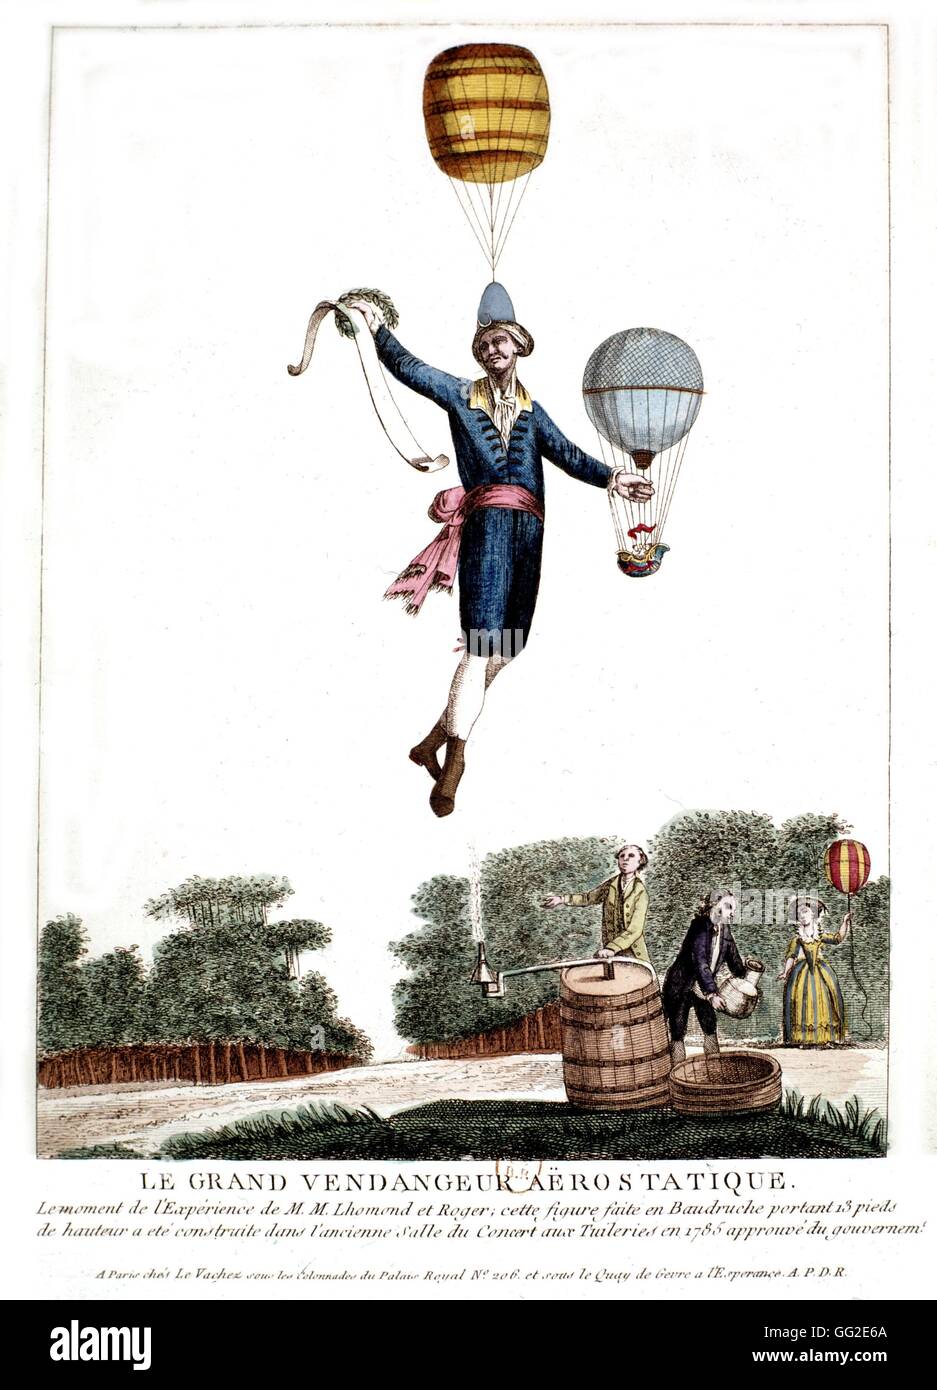 Der große aerostatischen Traube-Picker von Lhomond und Roger erstellt.  Diese 13 Fuß hohen Ballon mit einer Blase gemacht wurde 1785 in der ehemaligen Tuileries Concert Hall in 1785 Frankreich hergestellt. Stockfoto